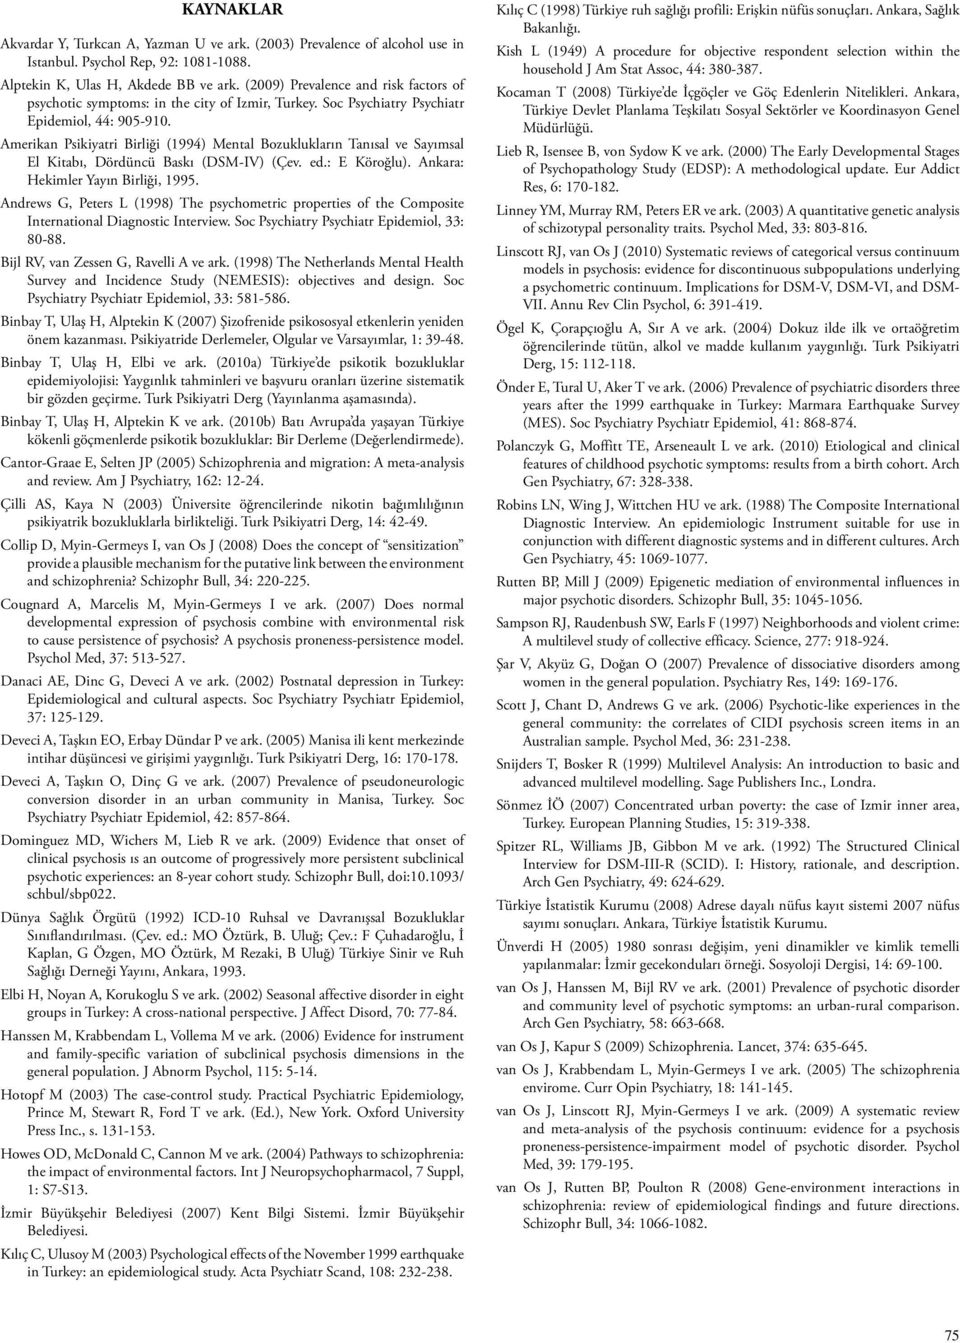 Amerikan Psikiyatri Birliği (1994) Mental Bozuklukların Tanısal ve Sayımsal El Kitabı, Dördüncü Baskı (DSM-IV) (Çev. ed.: E Köroğlu). Ankara: Hekimler Yayın Birliği, 1995.